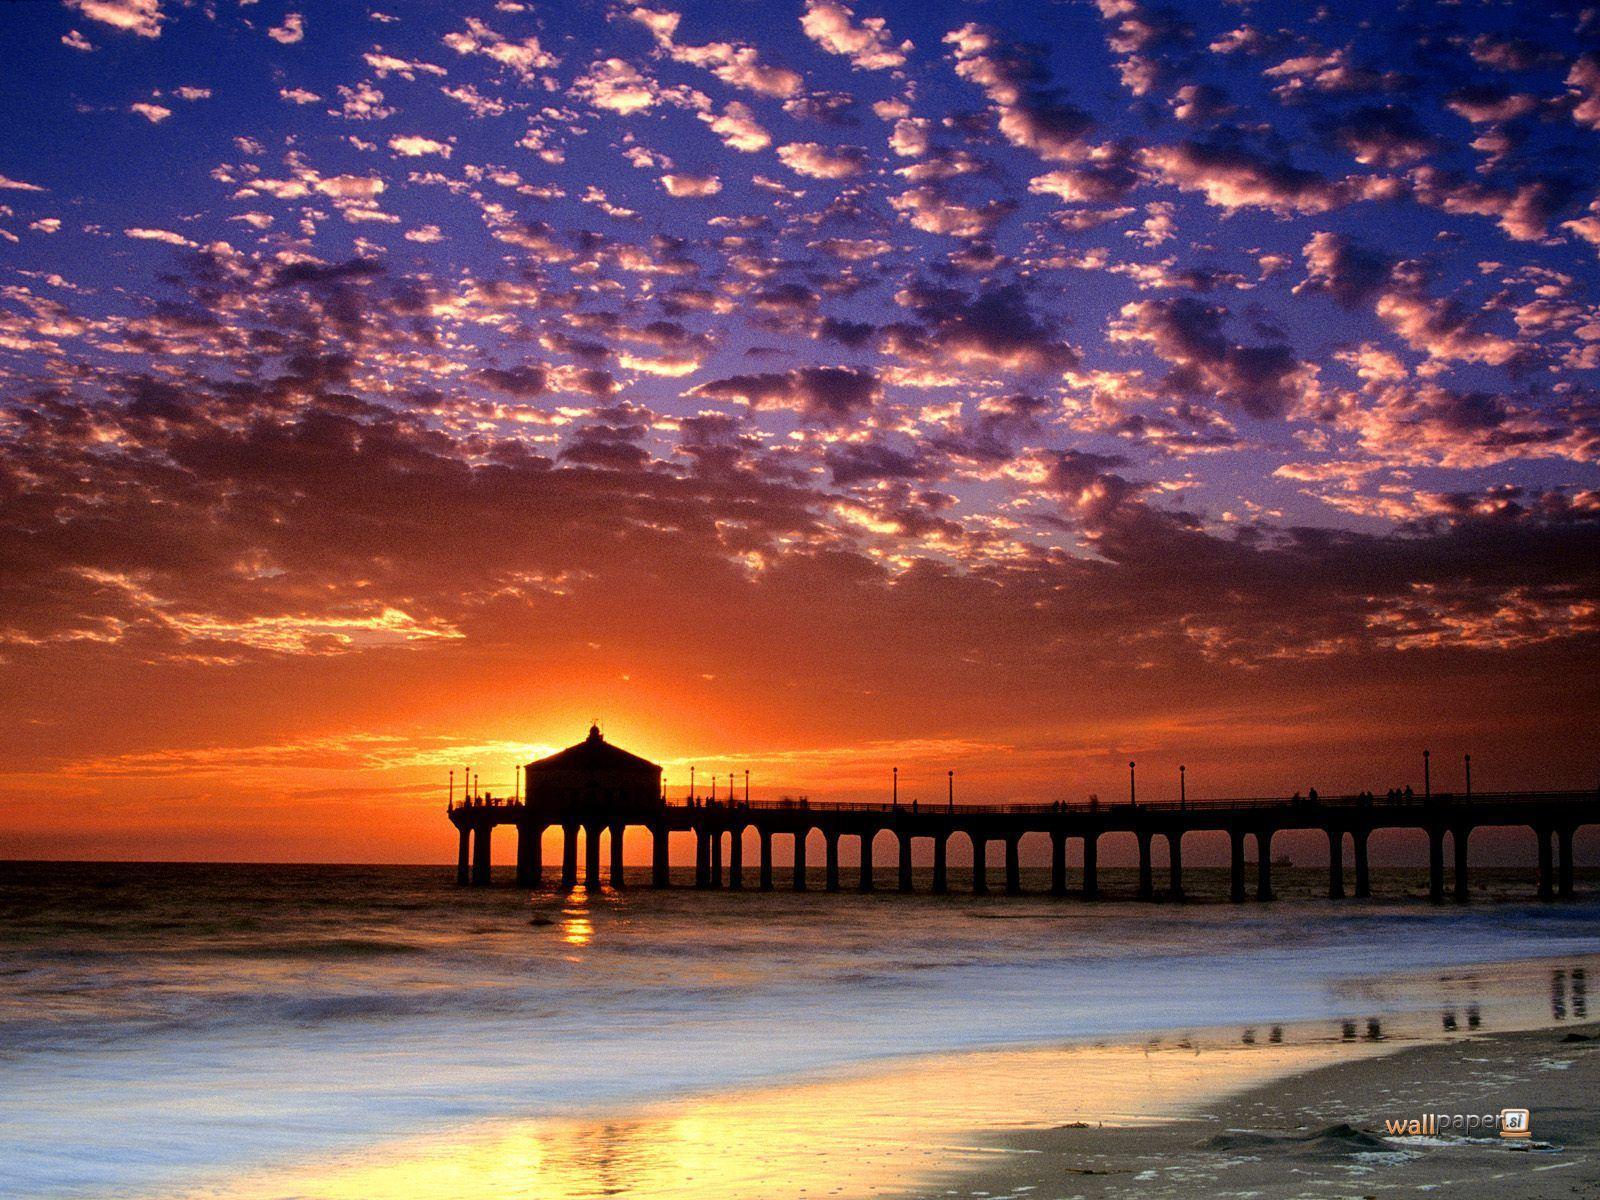 California Beach Sunset Wallpaper .wallpaperaccess.com